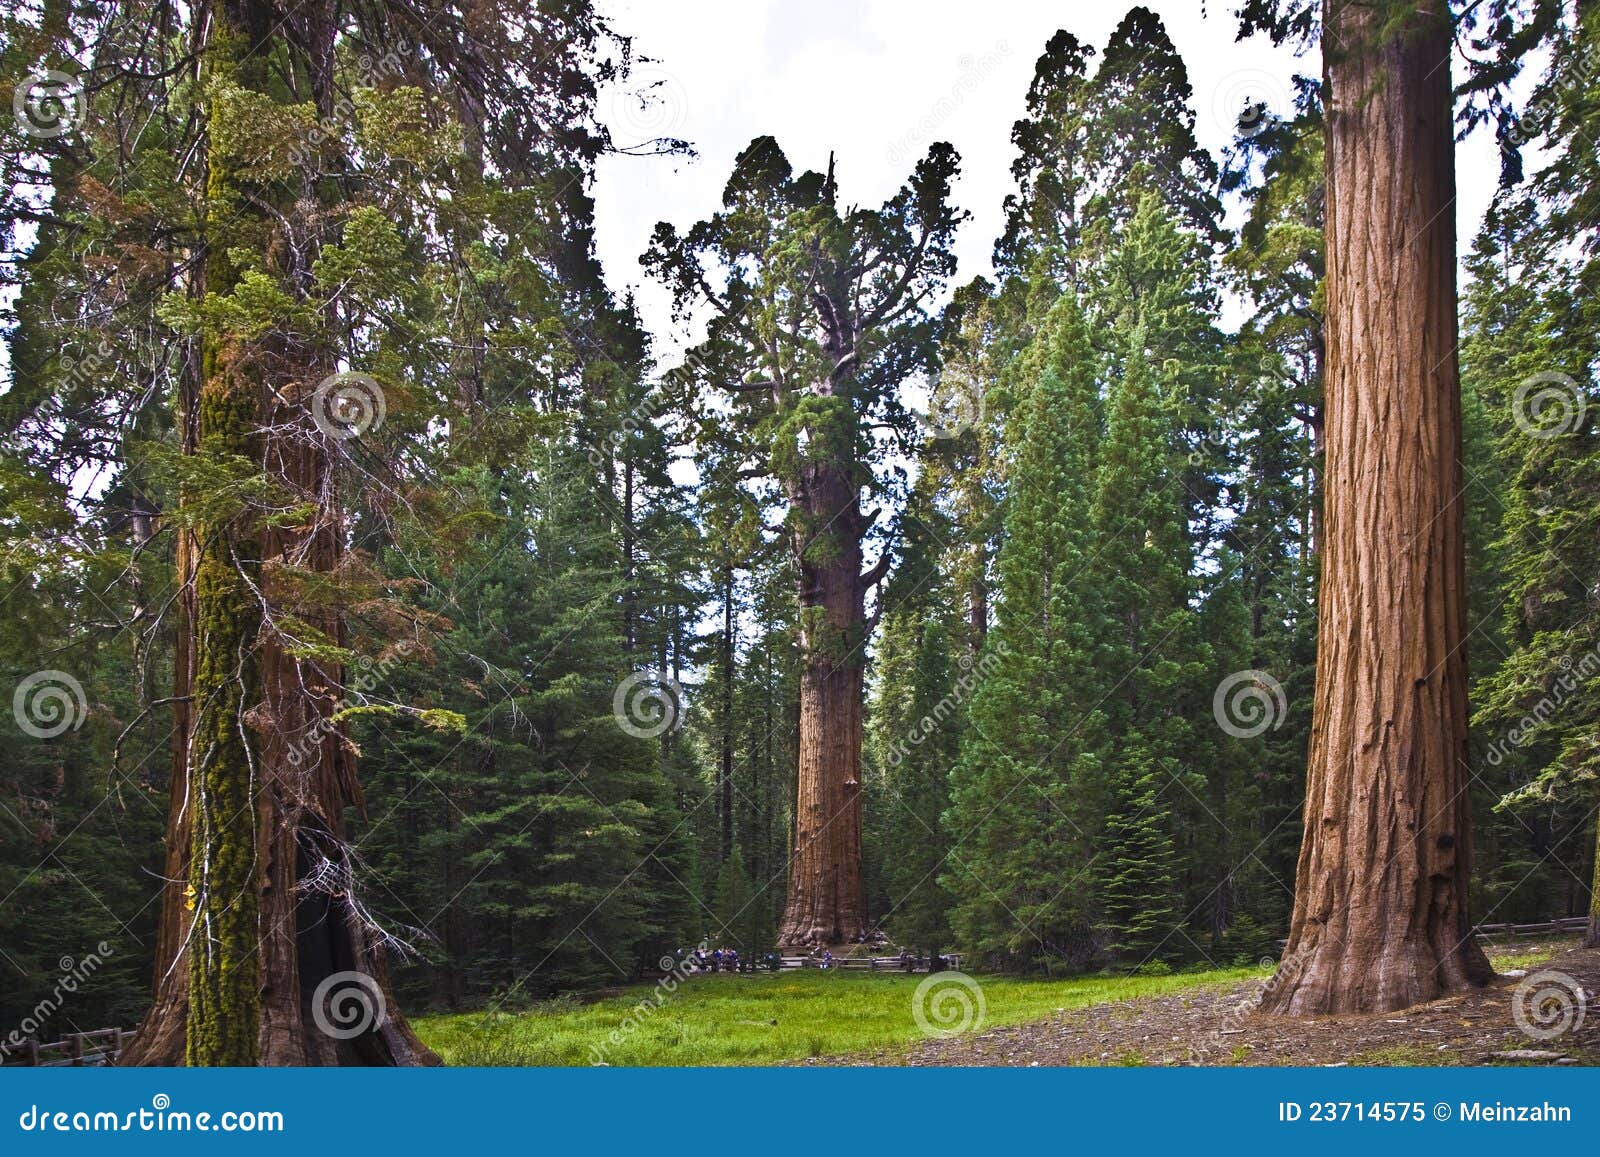 sequoias in beautiful sequoia national park